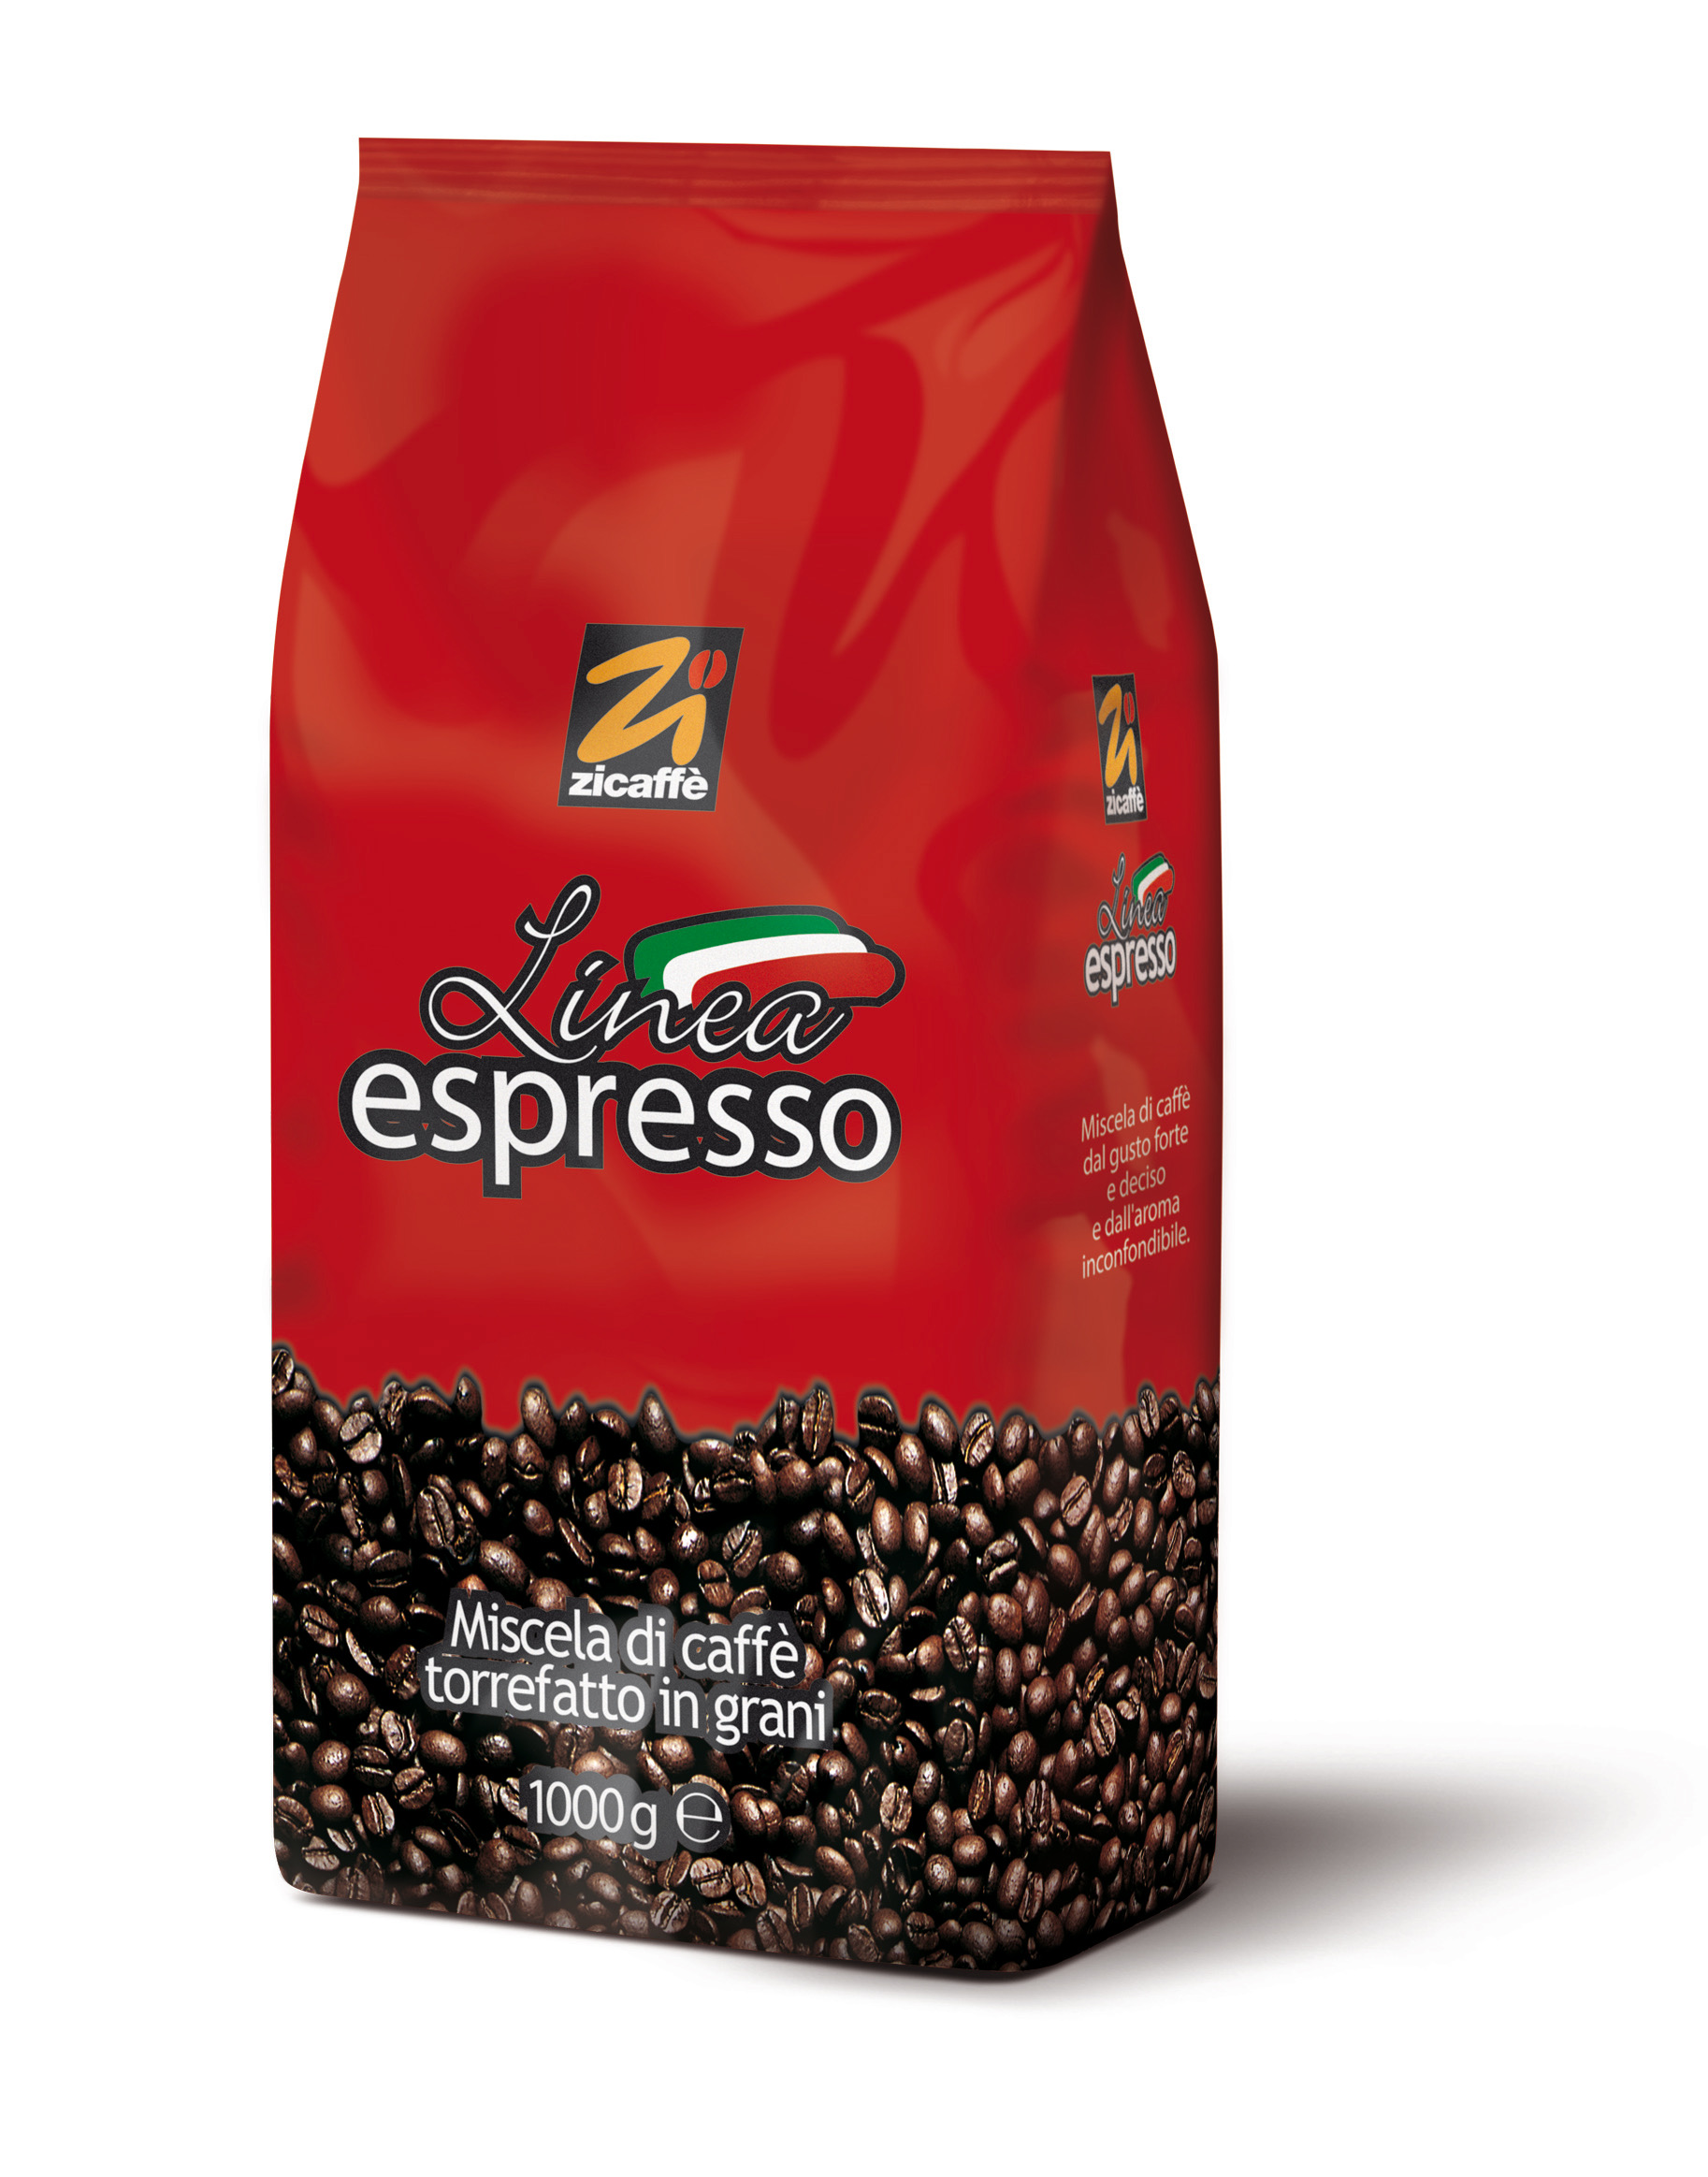 ZICAFFÈ LINEA ESPRESSO ab 12,66 EUR bei Crifalu Espresso online günstig kaufen